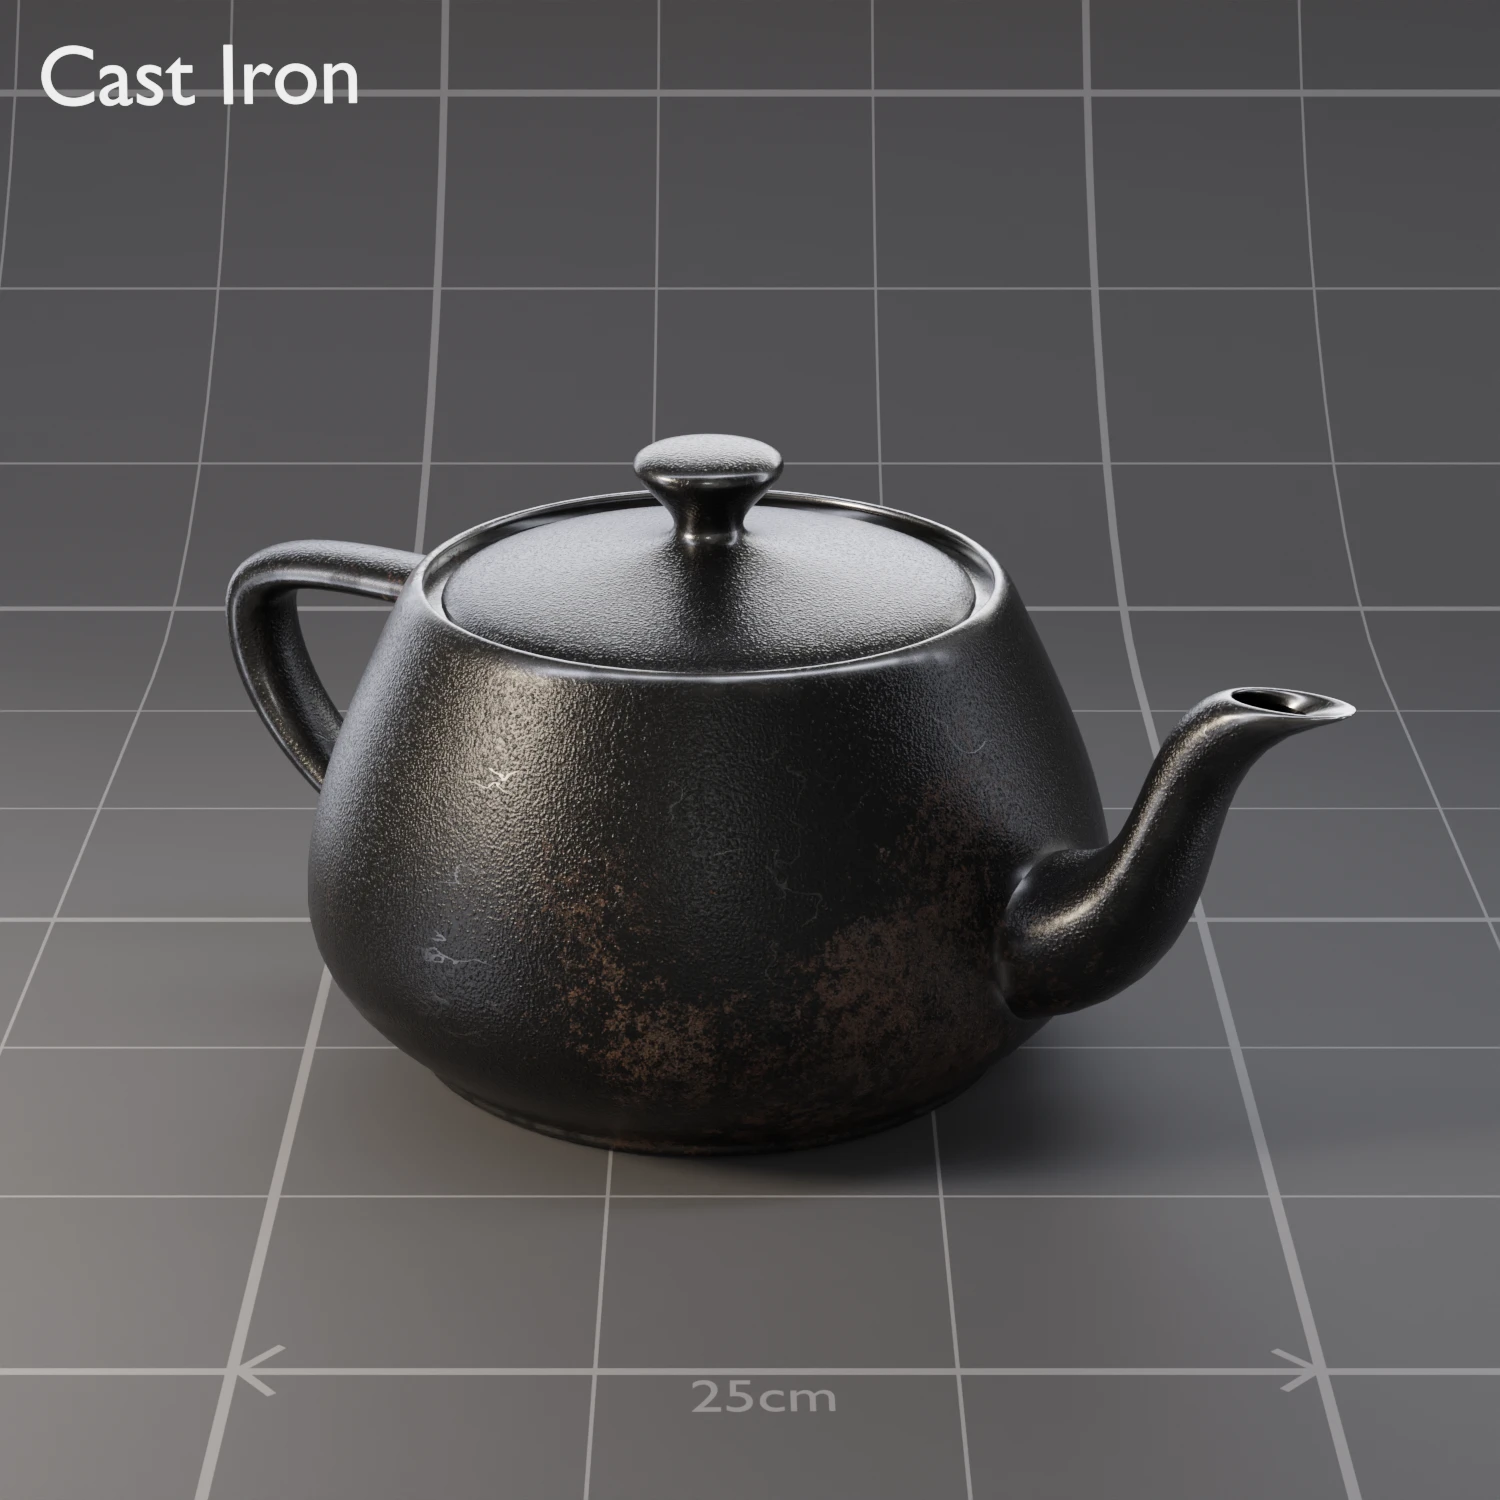 /pr/image/mats/Cast Iron.WebP